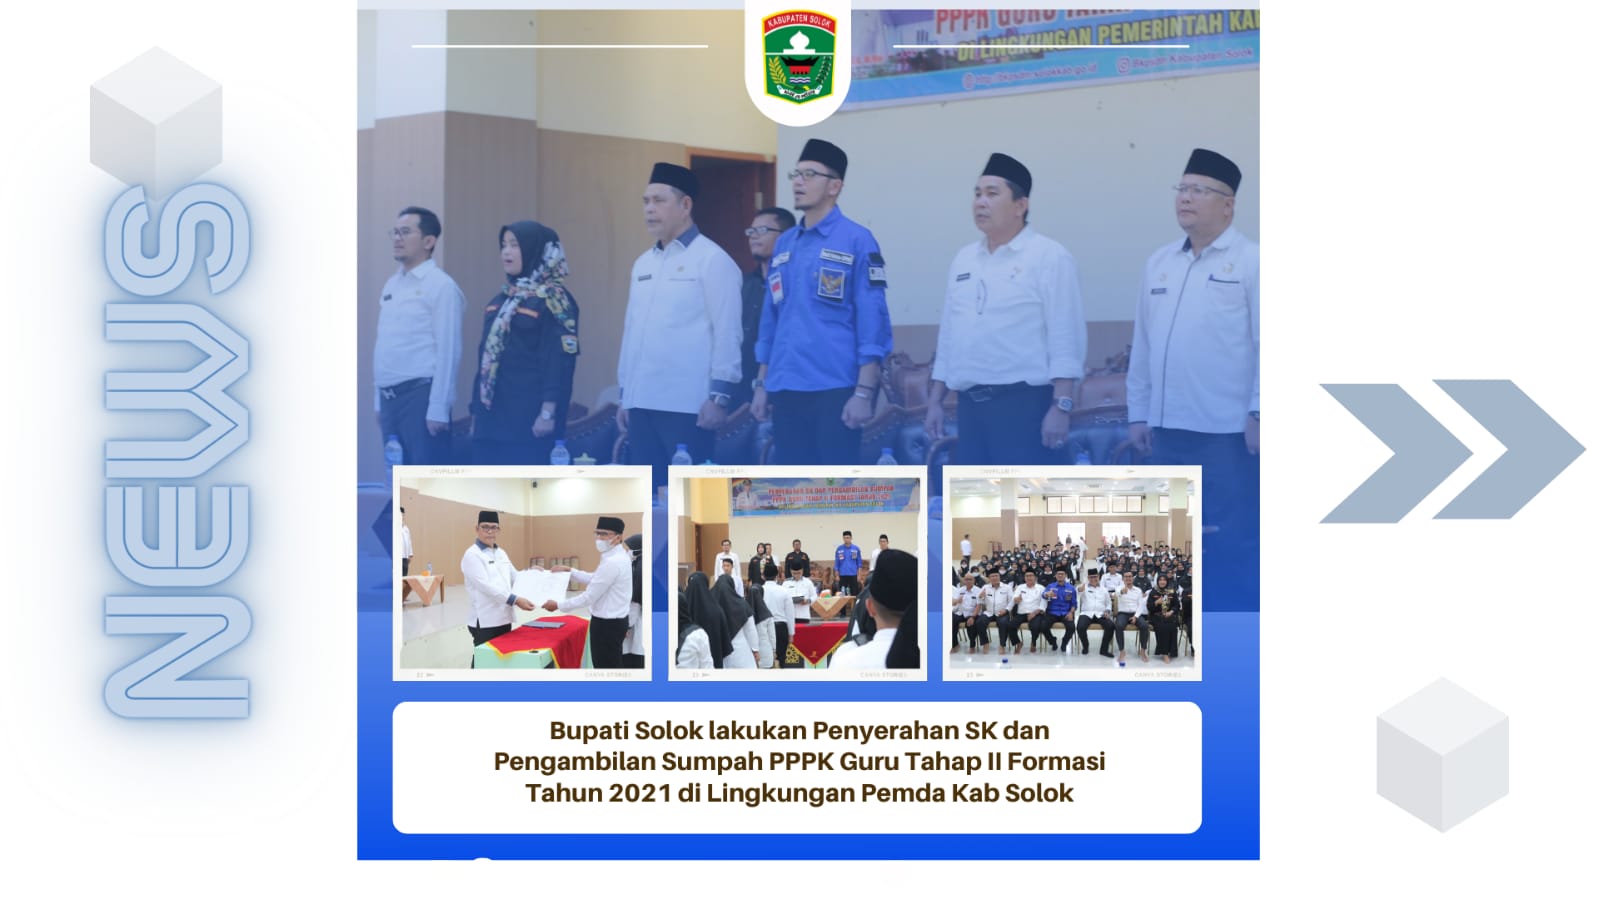 Bupati Solok lakukan Penyerahan SK dan Pengambilan Sumpah PPPK Guru Tahap II Formasi Tahun 2021 di Lingkungan Pemda Kab Solok